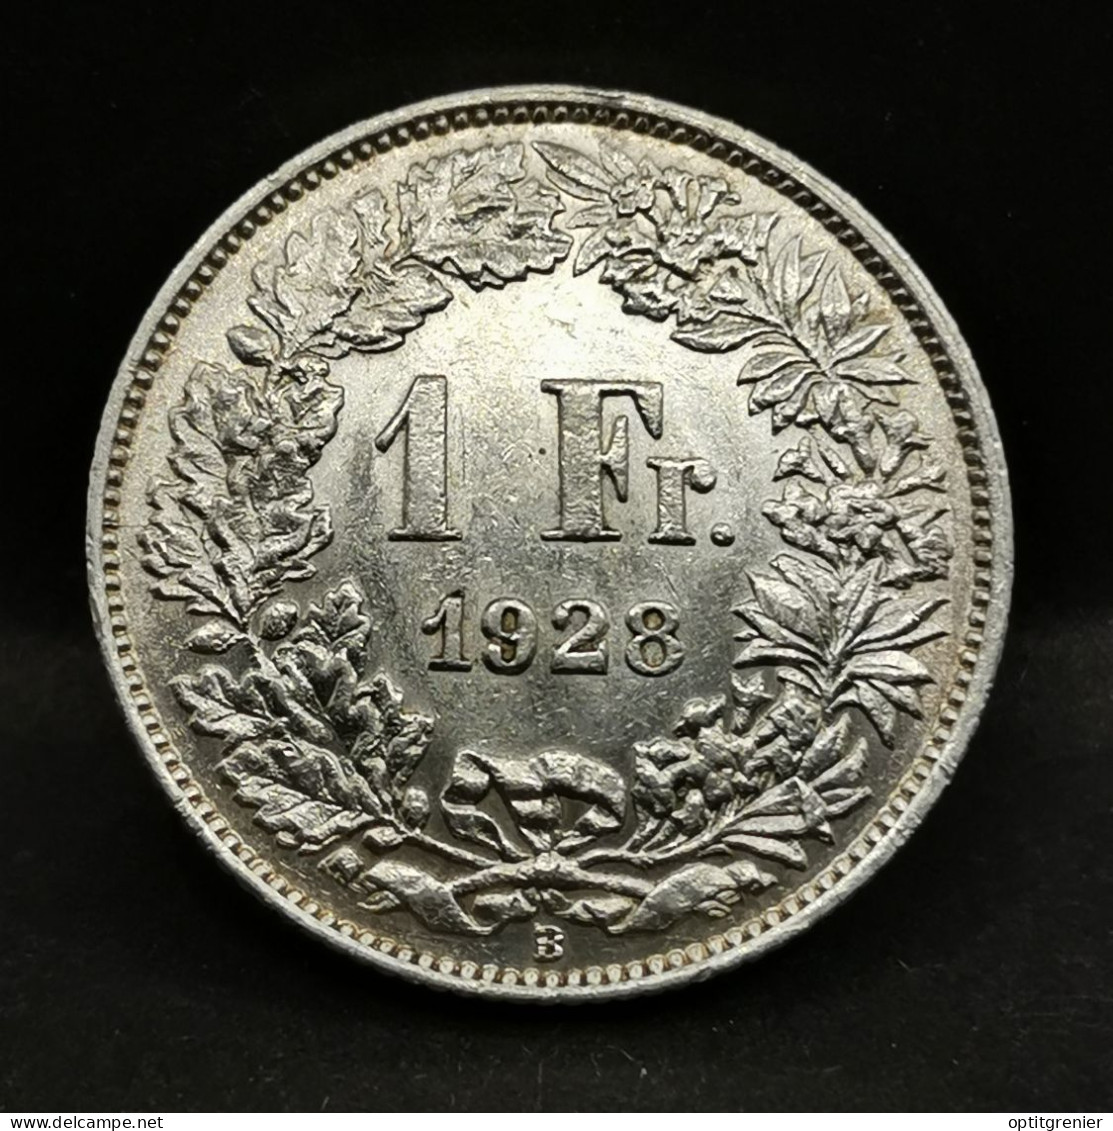 1 FRANC ARGENT 1928 B BERNE HELVETIA DEBOUT / SUISSE / SILVER - 1 Franc